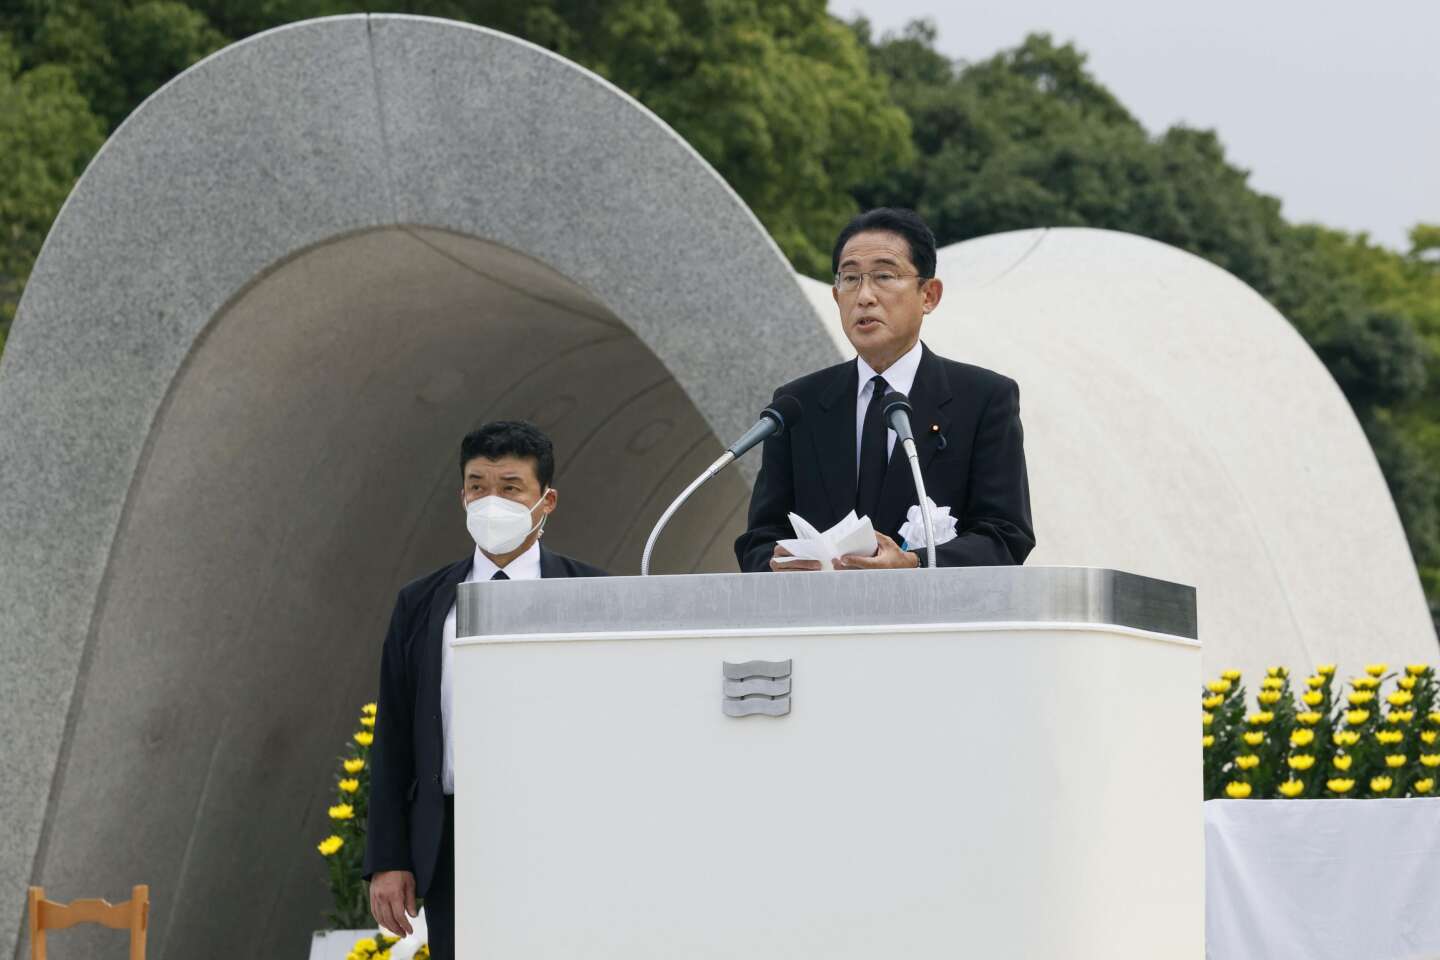 In Hiroshima ist die Rückkehr der Bedrohung durch Atomkraft in Konflikte besorgniserregend